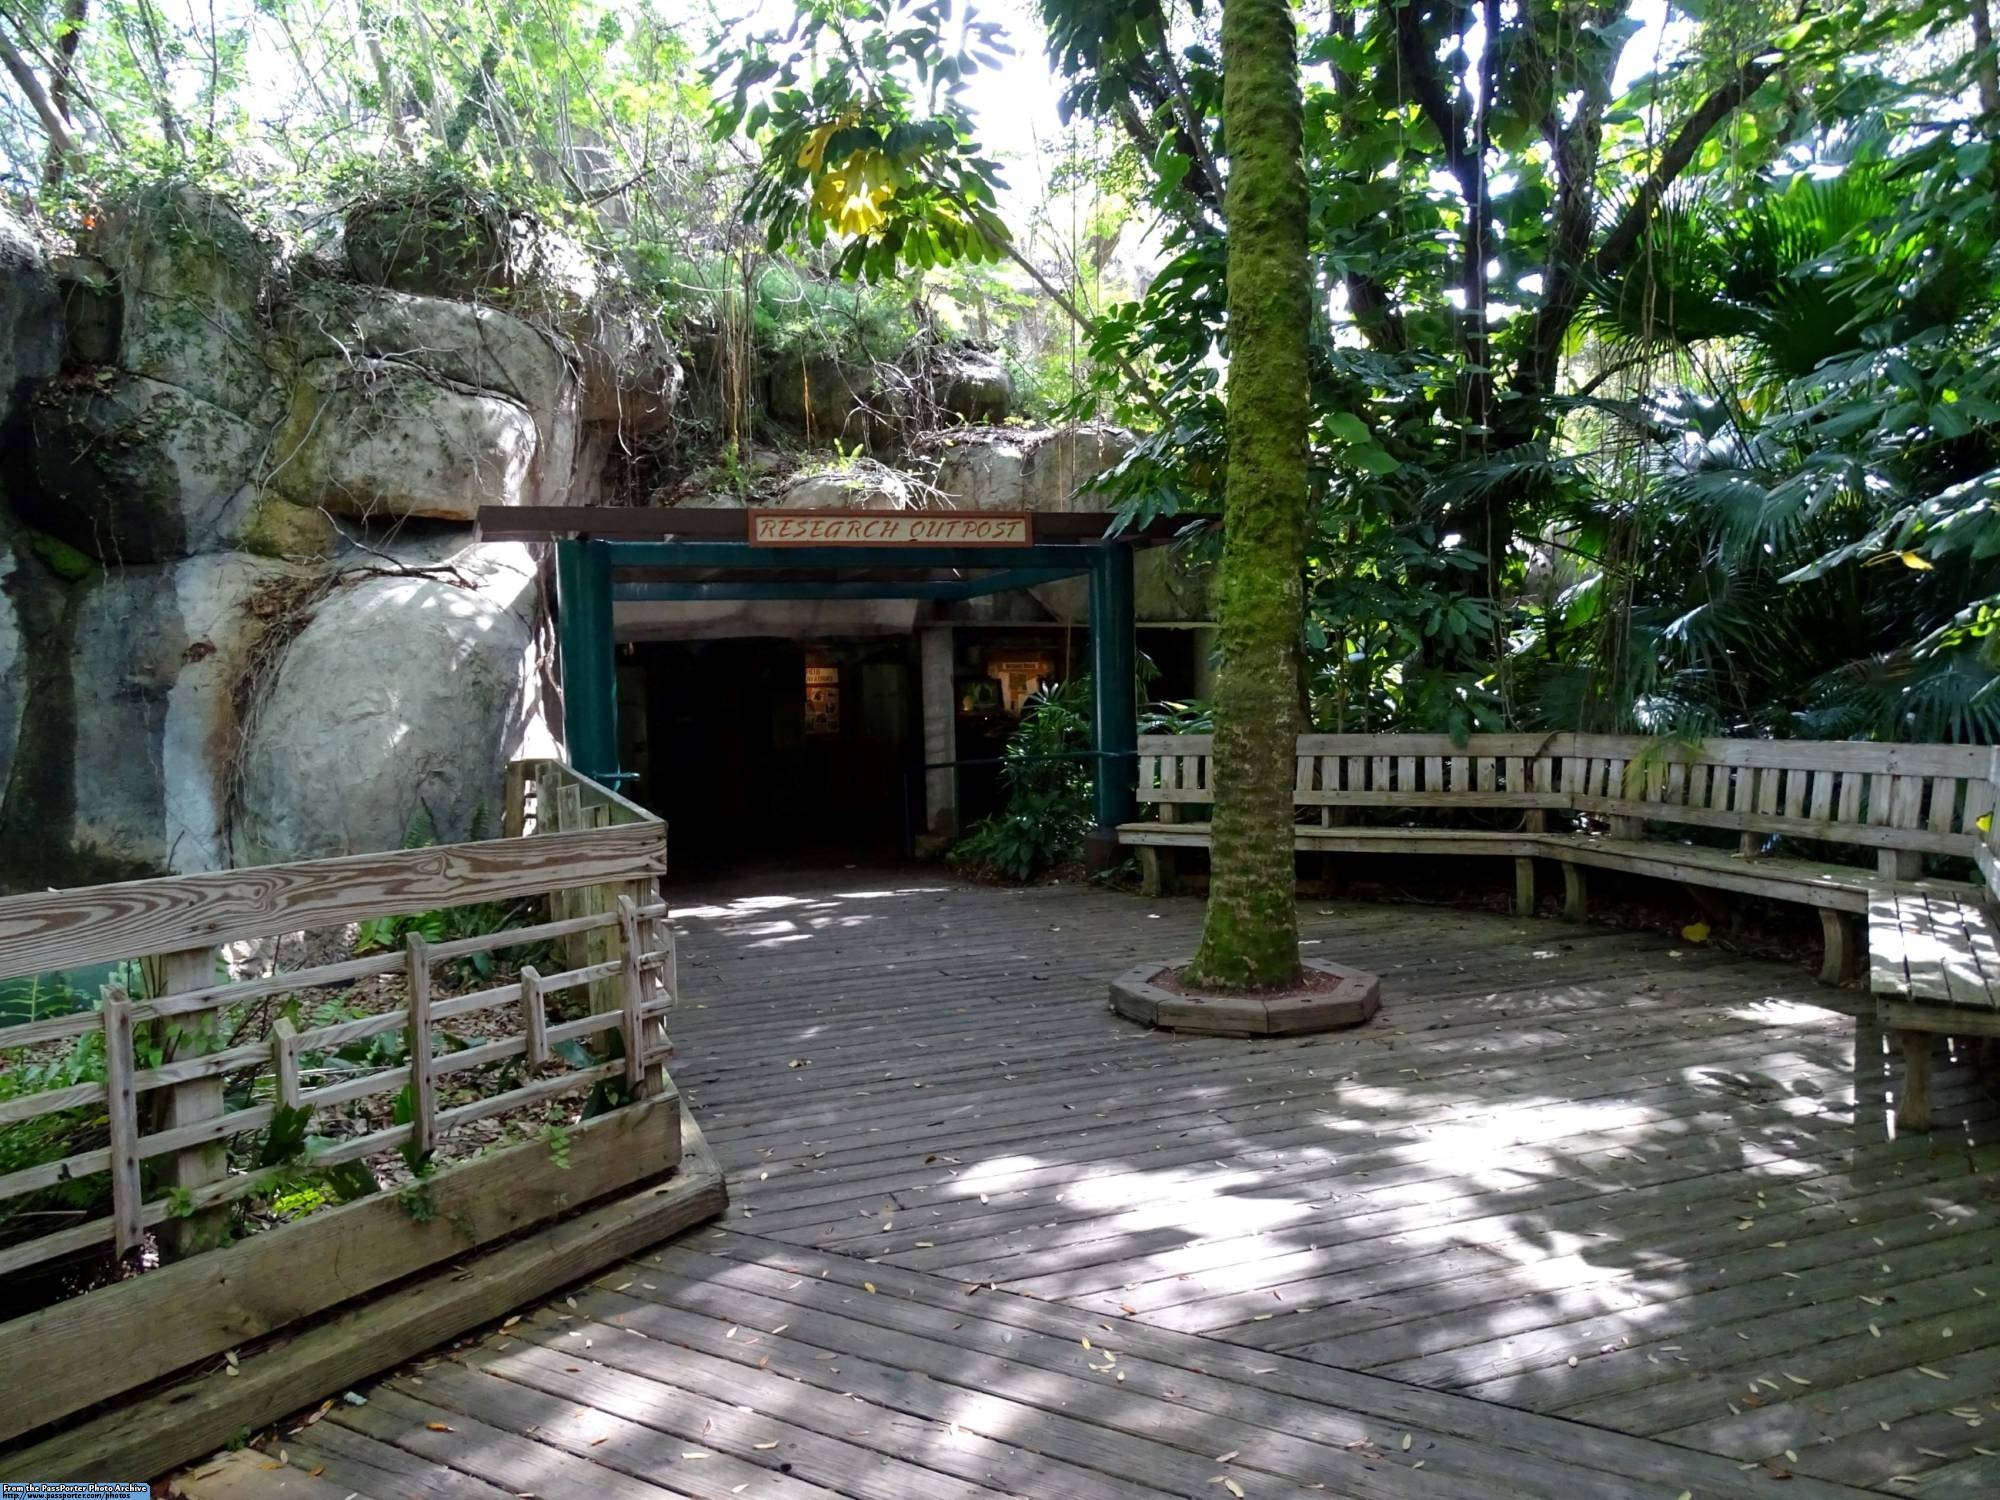 Busch Gardens - Myombe Reserve